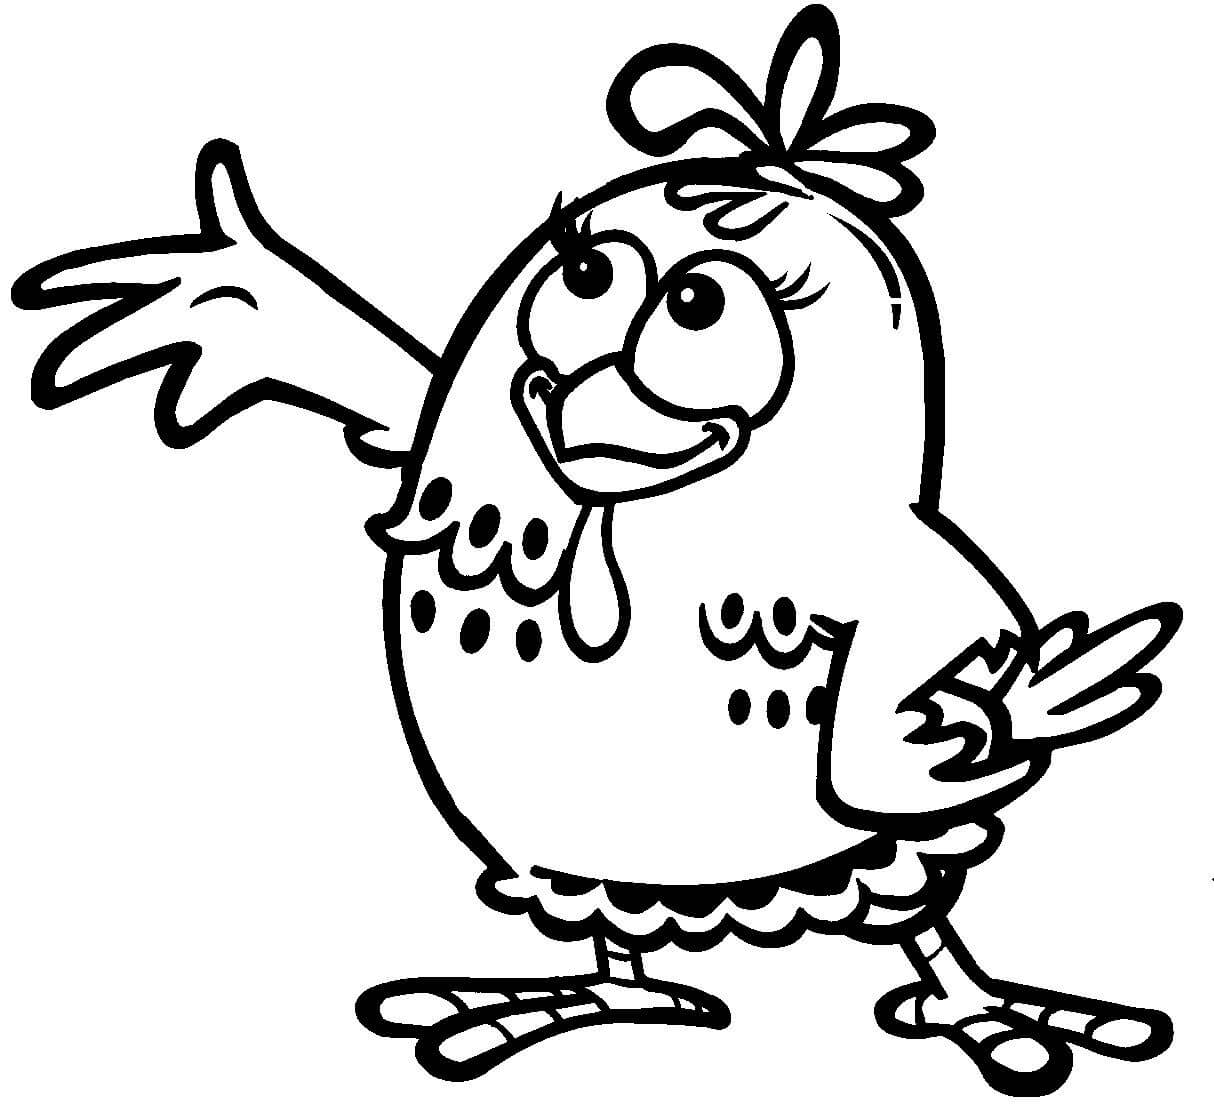 desenho para criancas galinha